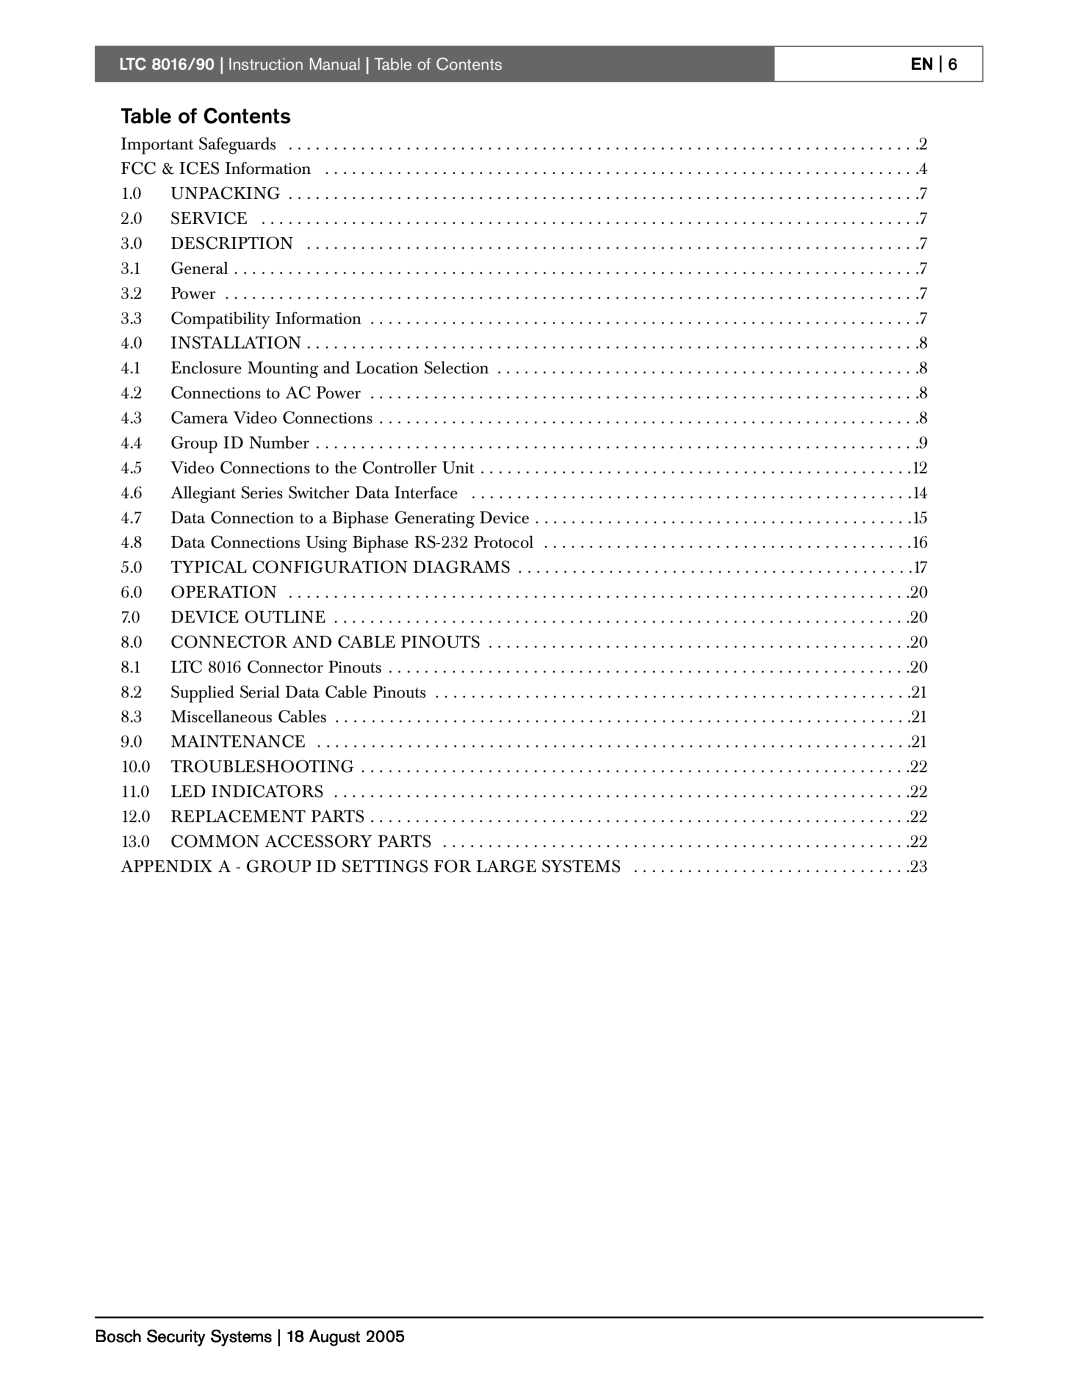 Bosch Appliances LTC 8016/90 instruction manual Table of Contents, En 